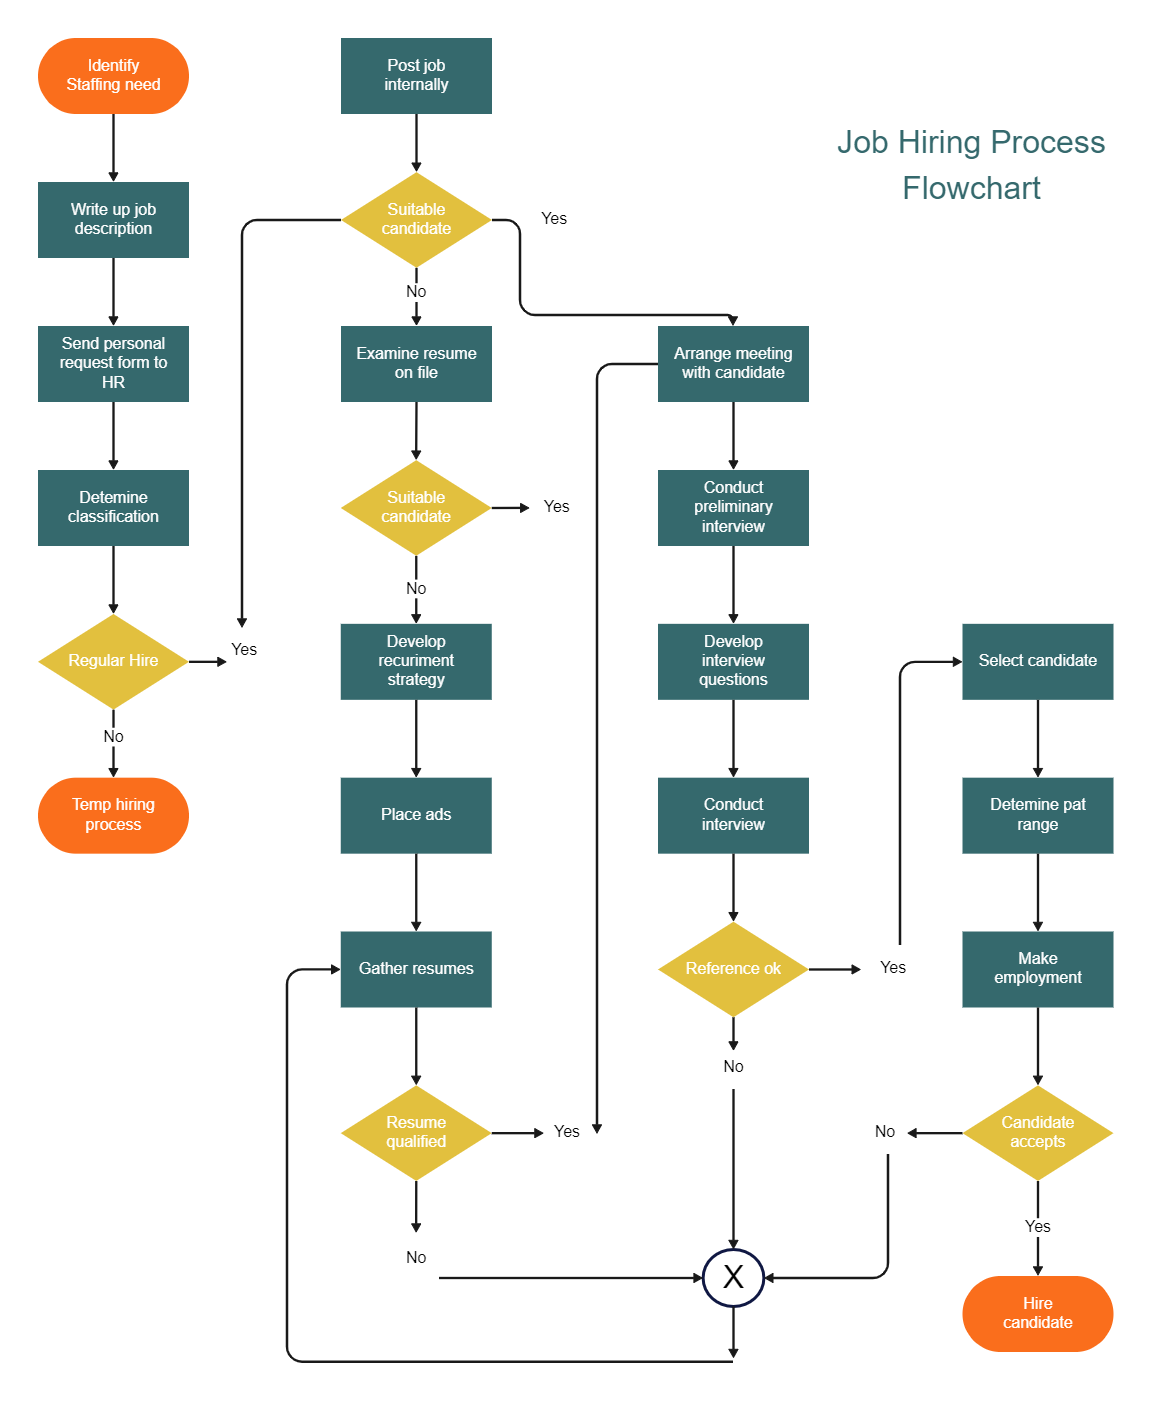 Hiring Process Flow Chart